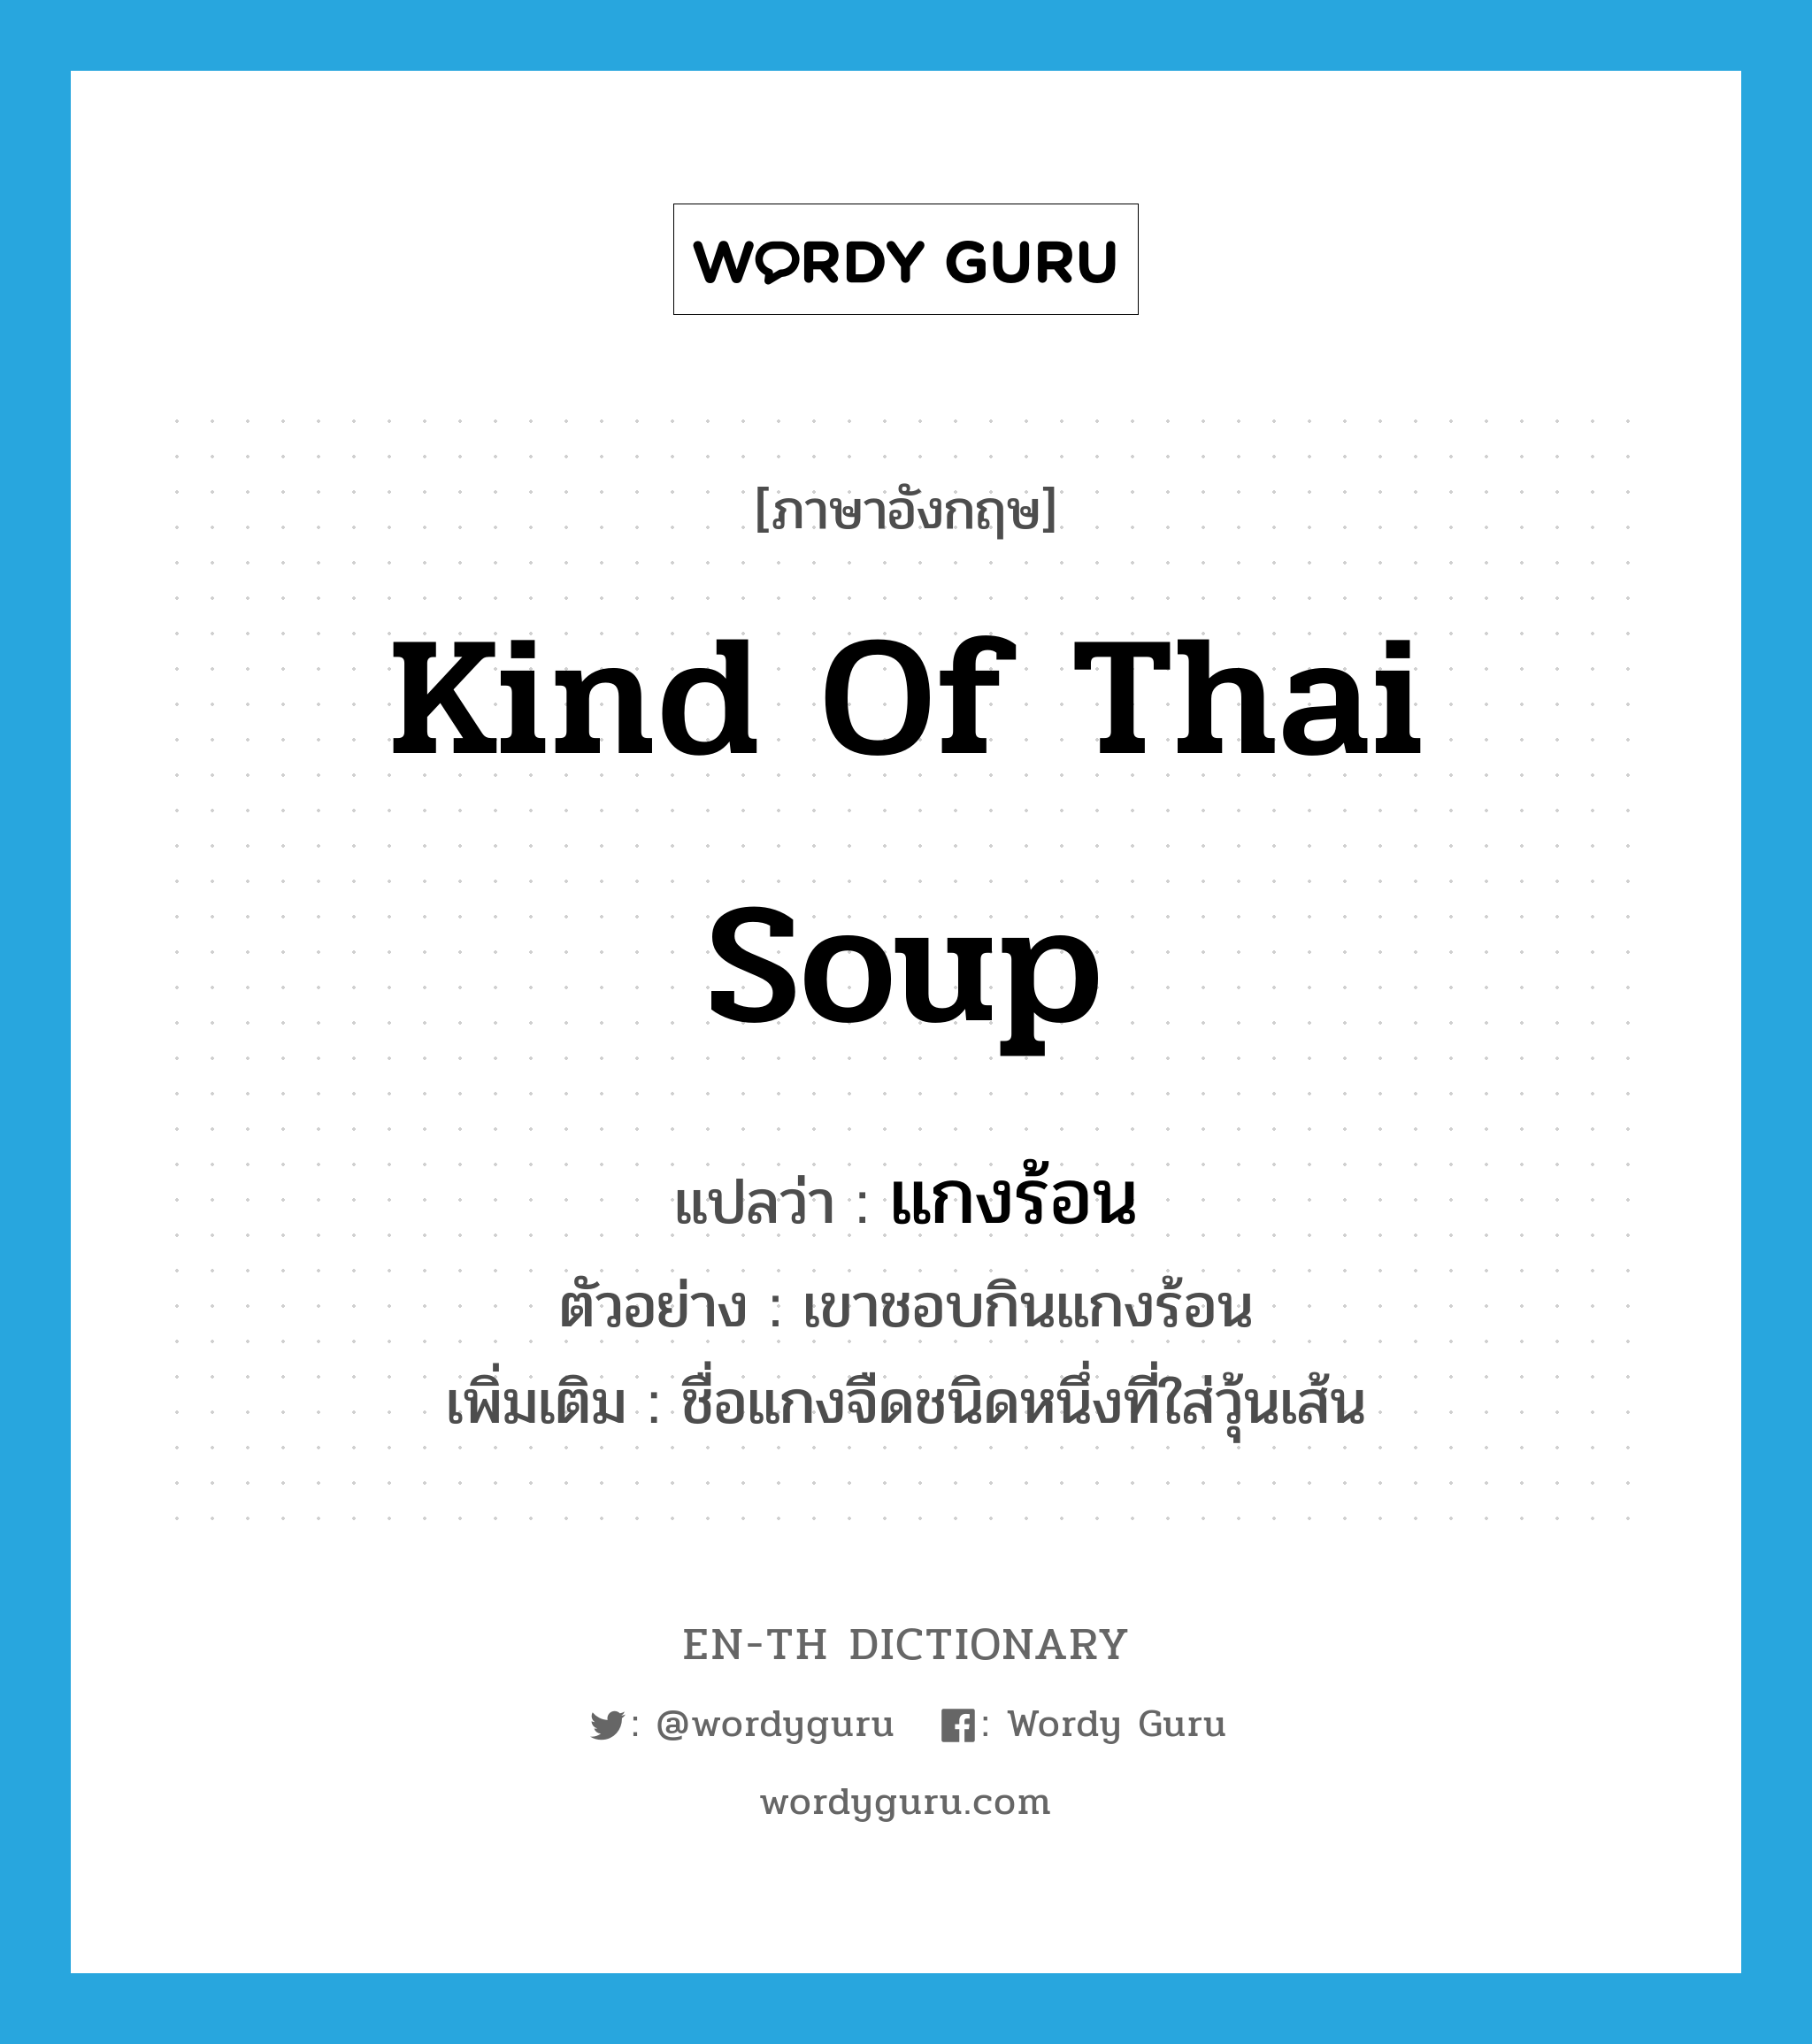 แกงร้อน ภาษาอังกฤษ?, คำศัพท์ภาษาอังกฤษ แกงร้อน แปลว่า kind of Thai soup ประเภท N ตัวอย่าง เขาชอบกินแกงร้อน เพิ่มเติม ชื่อแกงจืดชนิดหนึ่งที่ใส่วุ้นเส้น หมวด N